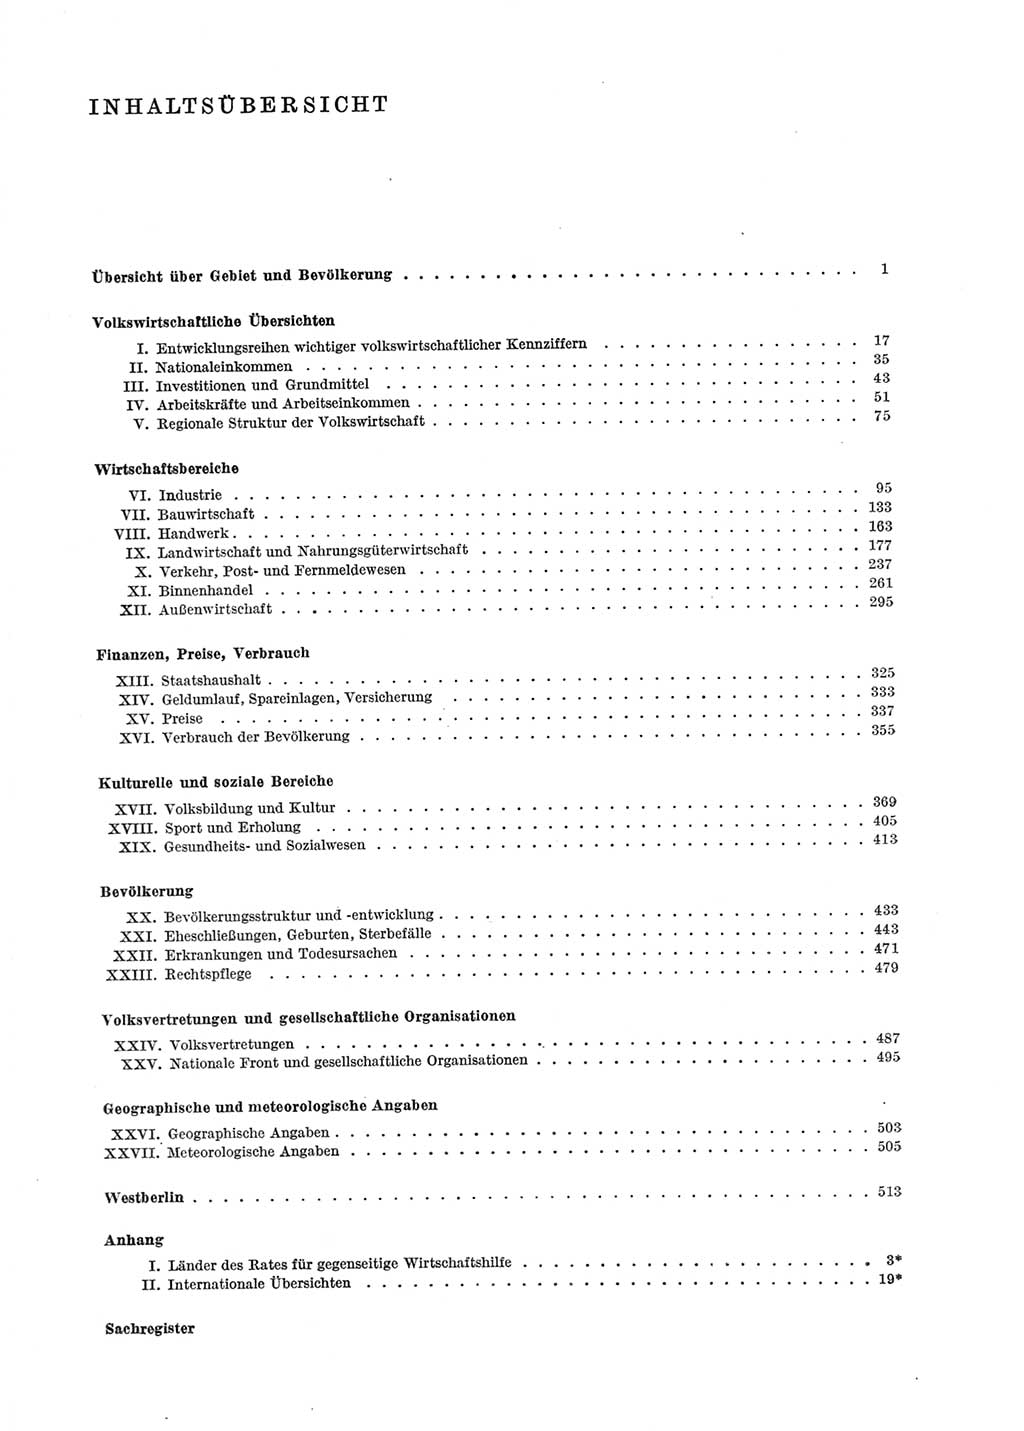 Statistisches Jahrbuch der Deutschen Demokratischen Republik (DDR) 1969, Seite 5 (Stat. Jb. DDR 1969, S. 5)